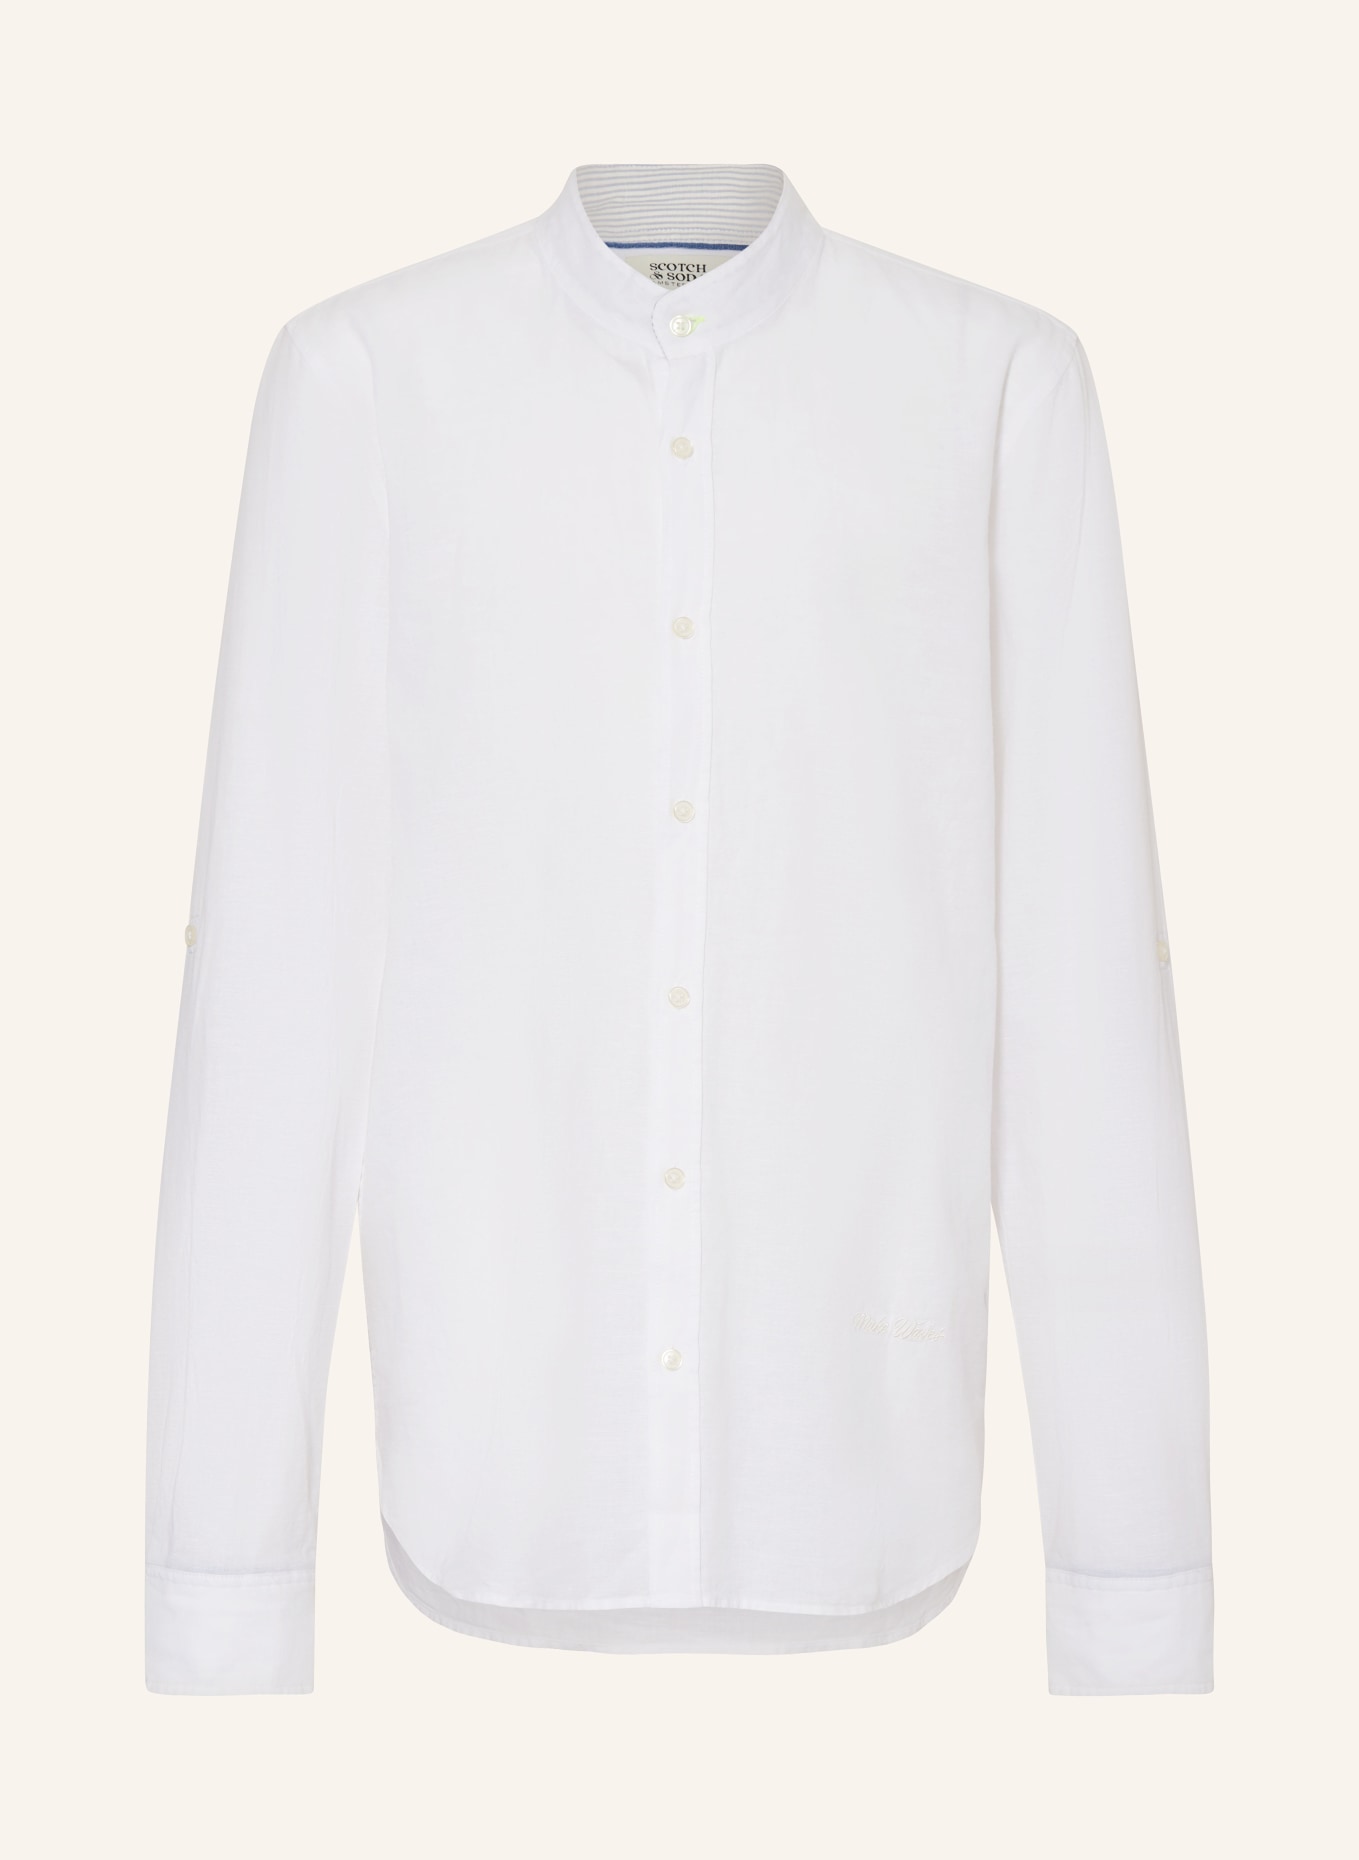 SCOTCH & SODA Hemd Regular Fit mit Stehkragen, Farbe: WEISS (Bild 1)